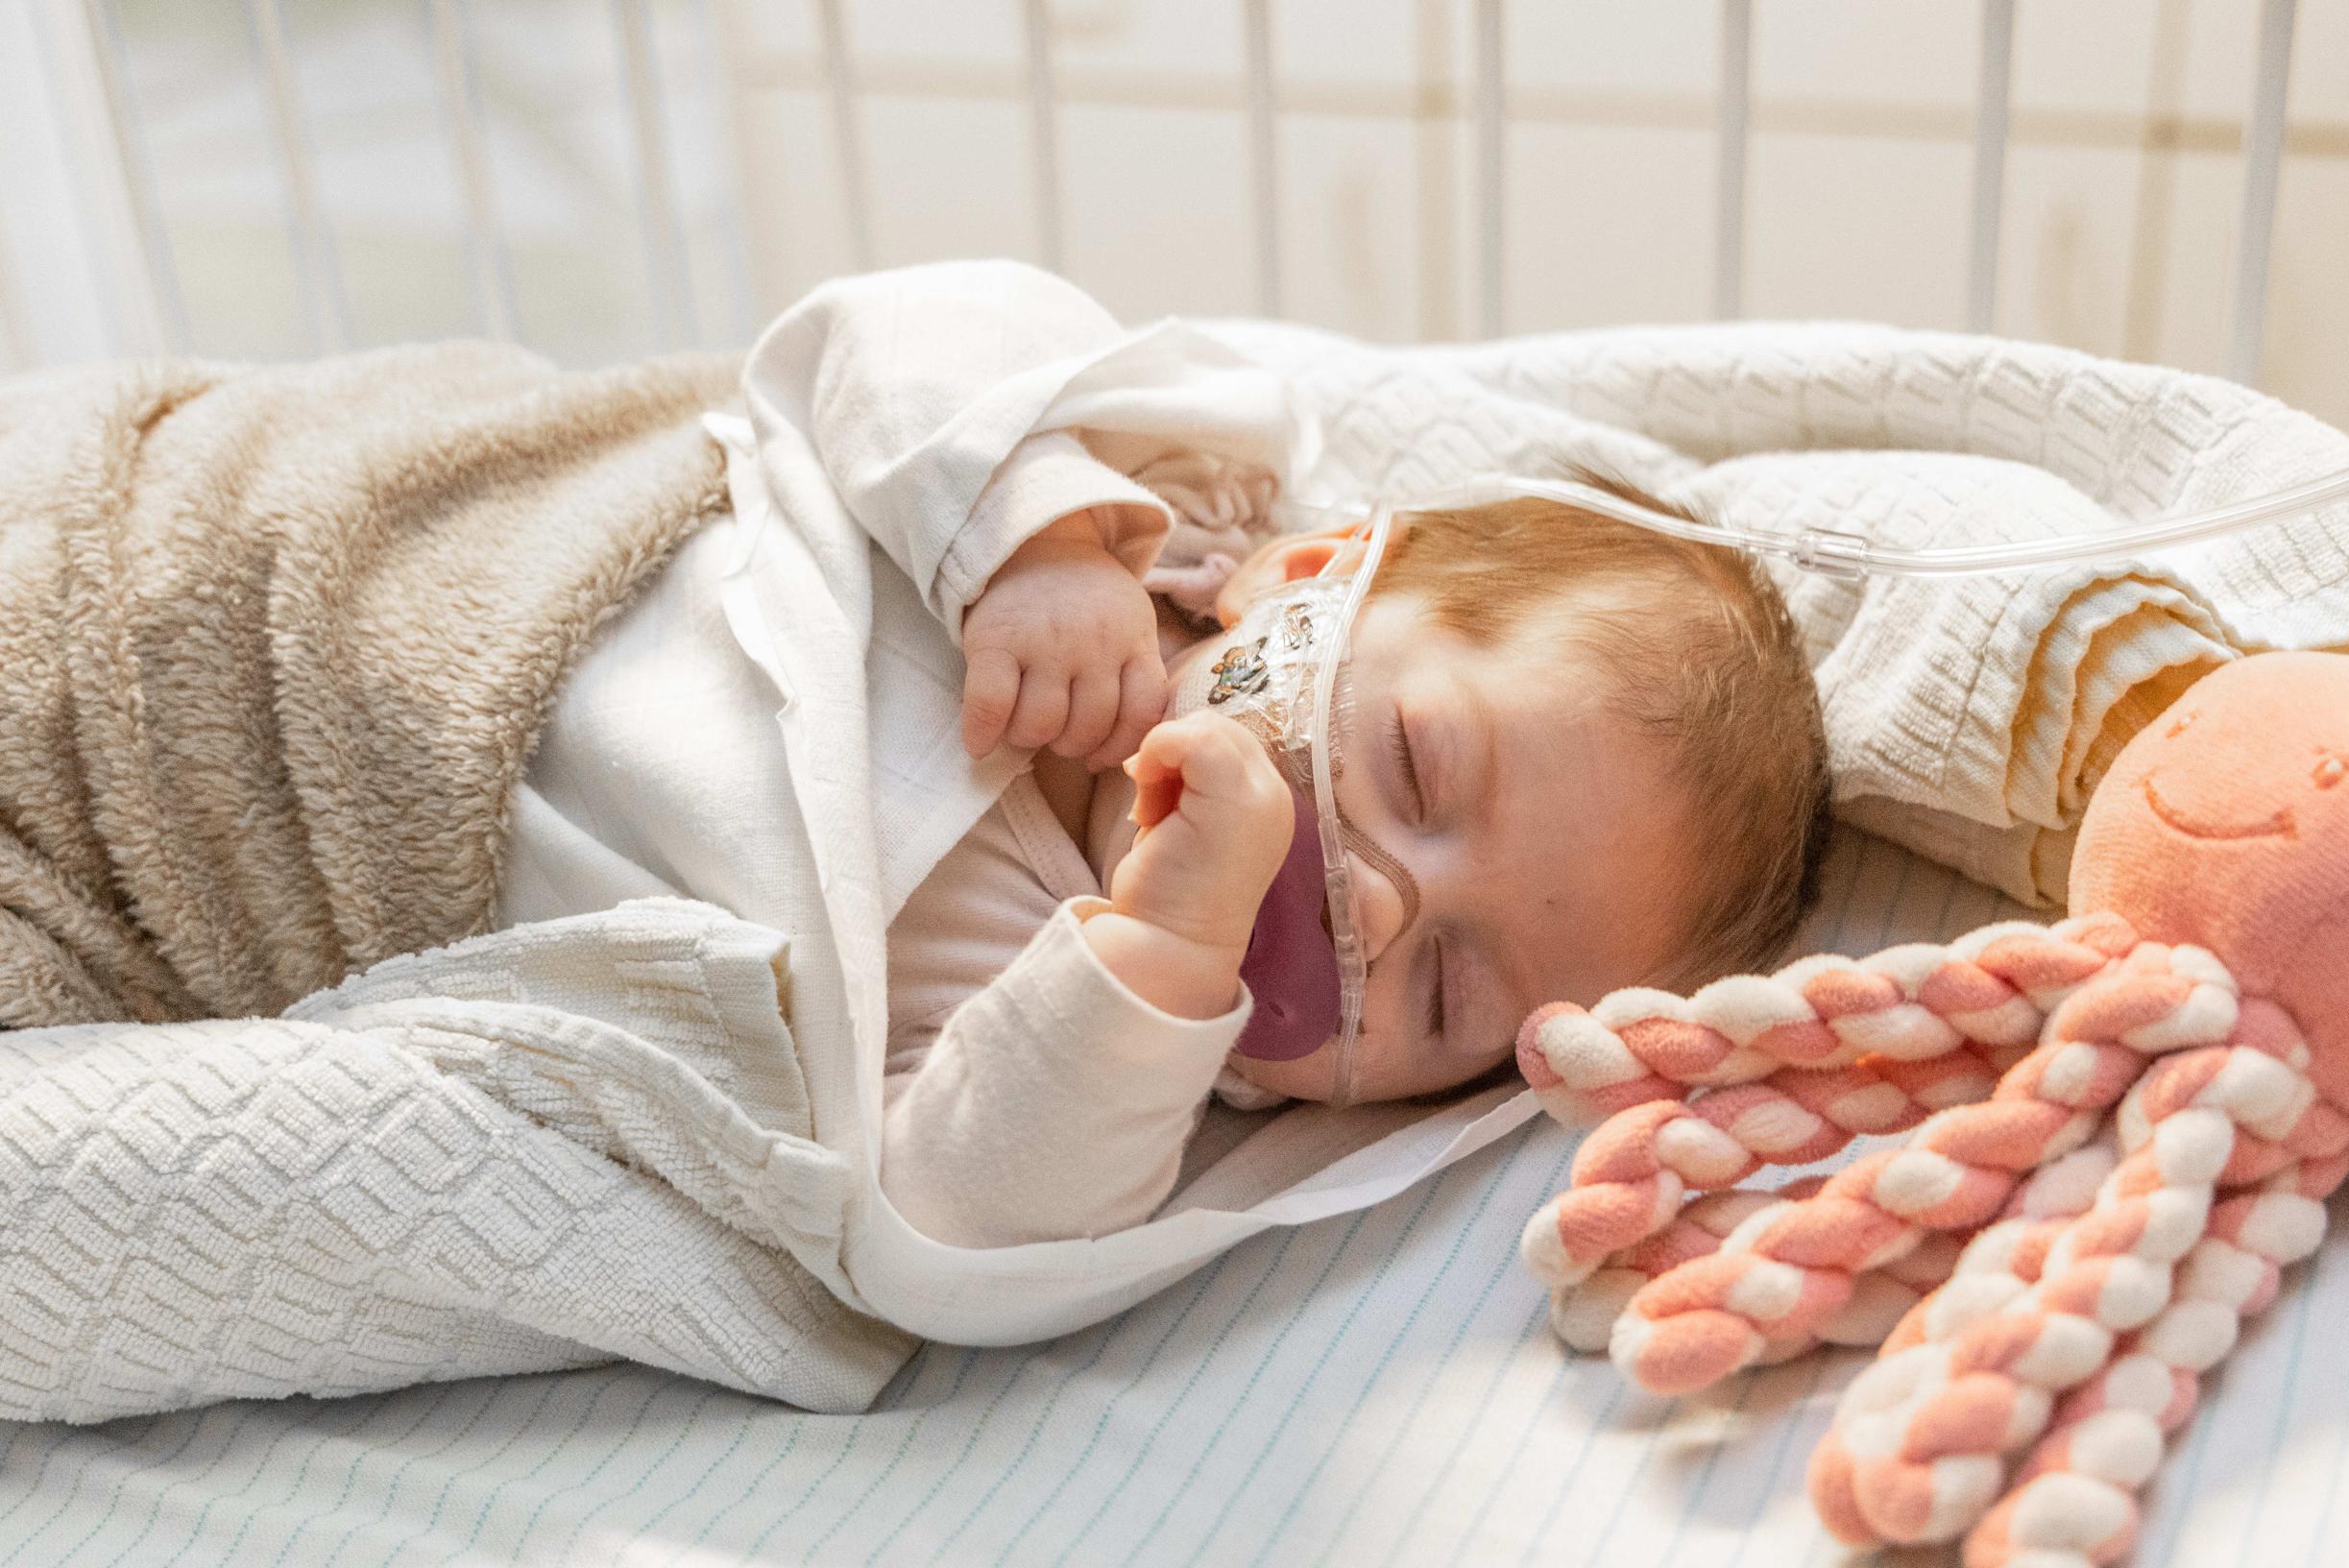 Limburgse kinderafdelingen (bijna) vol door RSV: “Babyborrels stel je beter uit”